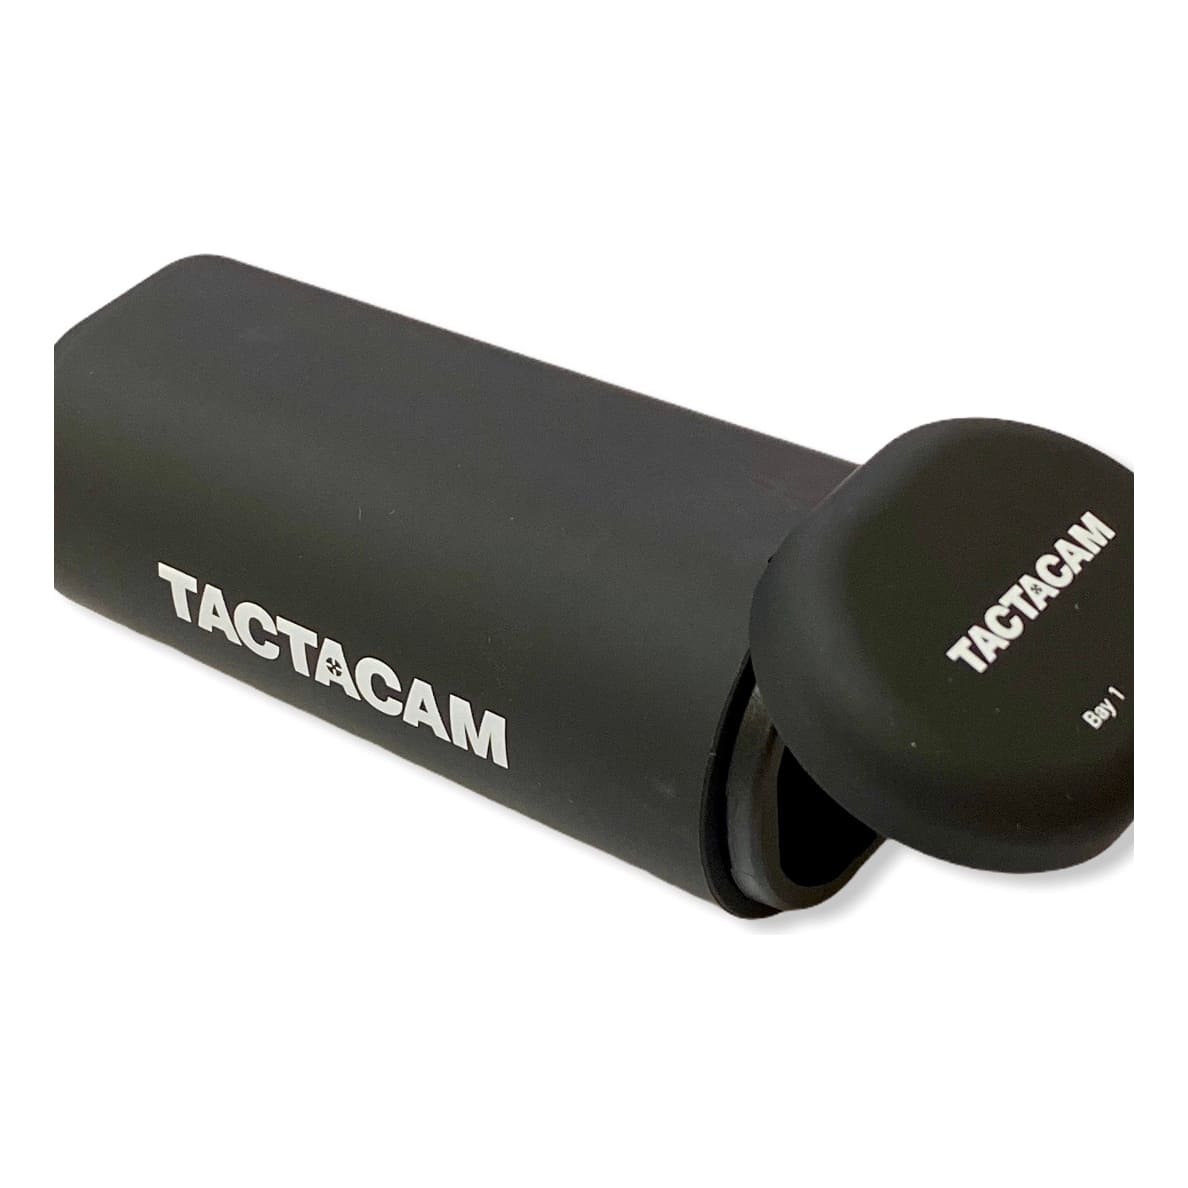 Tactacam™ External Battery Charger